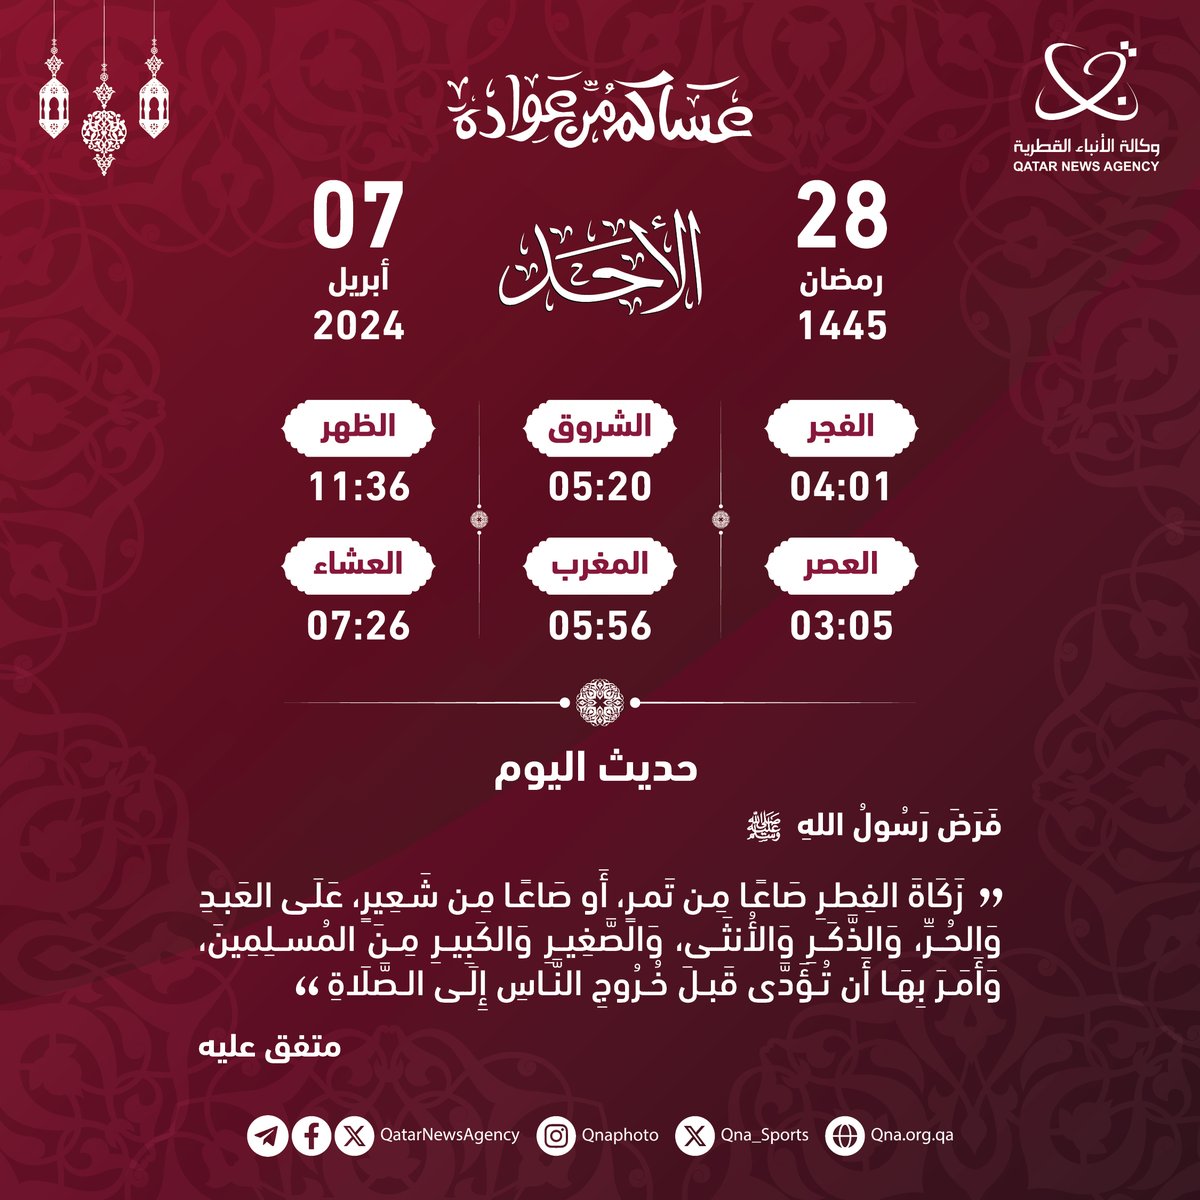 إمساكية اليوم | 28 رمضان 1445 حسب التوقيت المحلي 
#قنا #رمضان_في_قطر